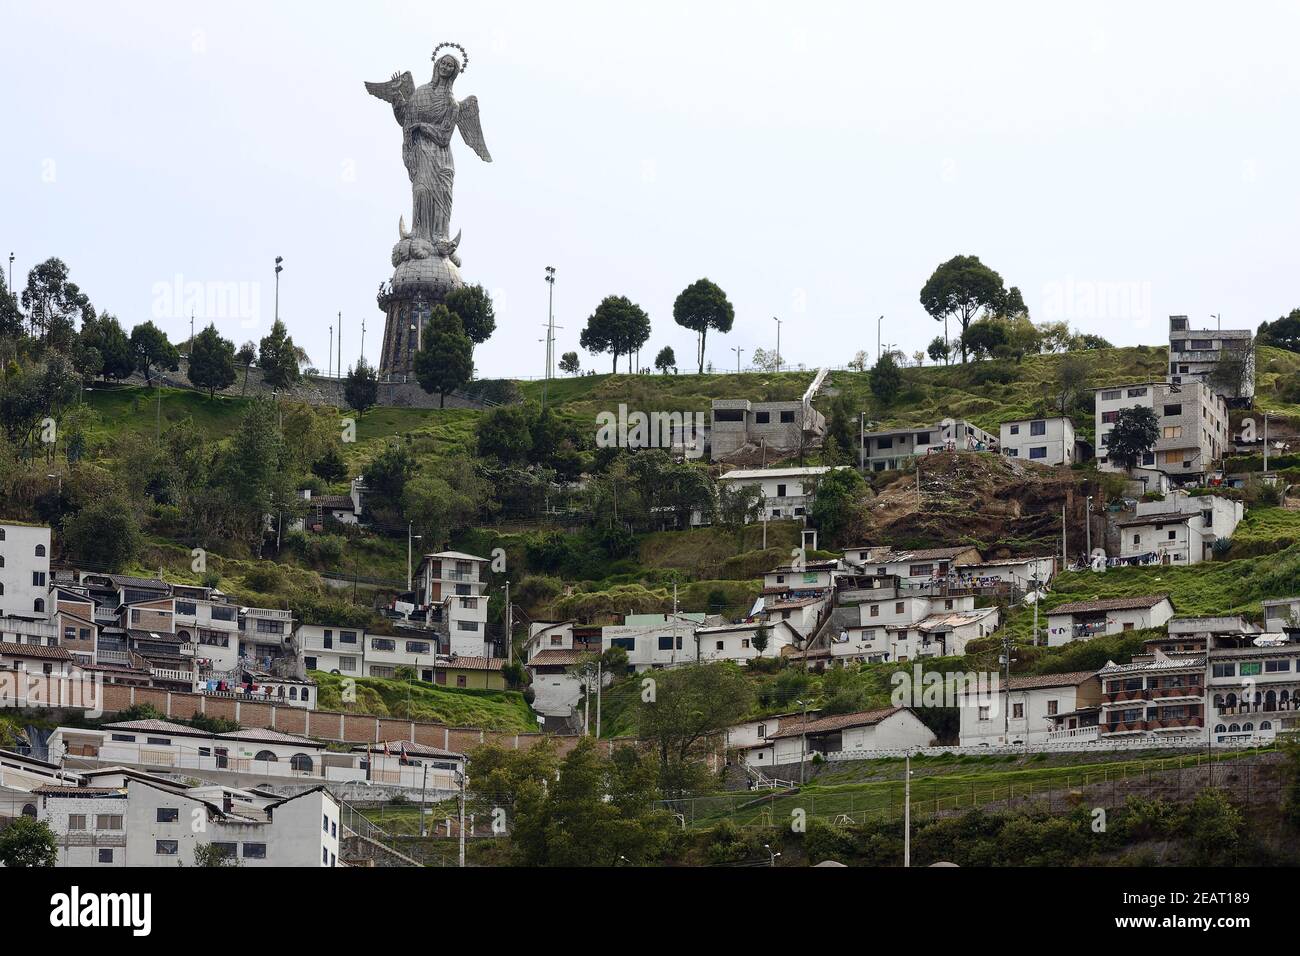 Paysage urbain, El Panecillo, colline escarpée, bâtiments; maisons, végétation, Vierge de Quito, grande statue, art religieux, Amérique du Sud, Quito, Equateur Banque D'Images